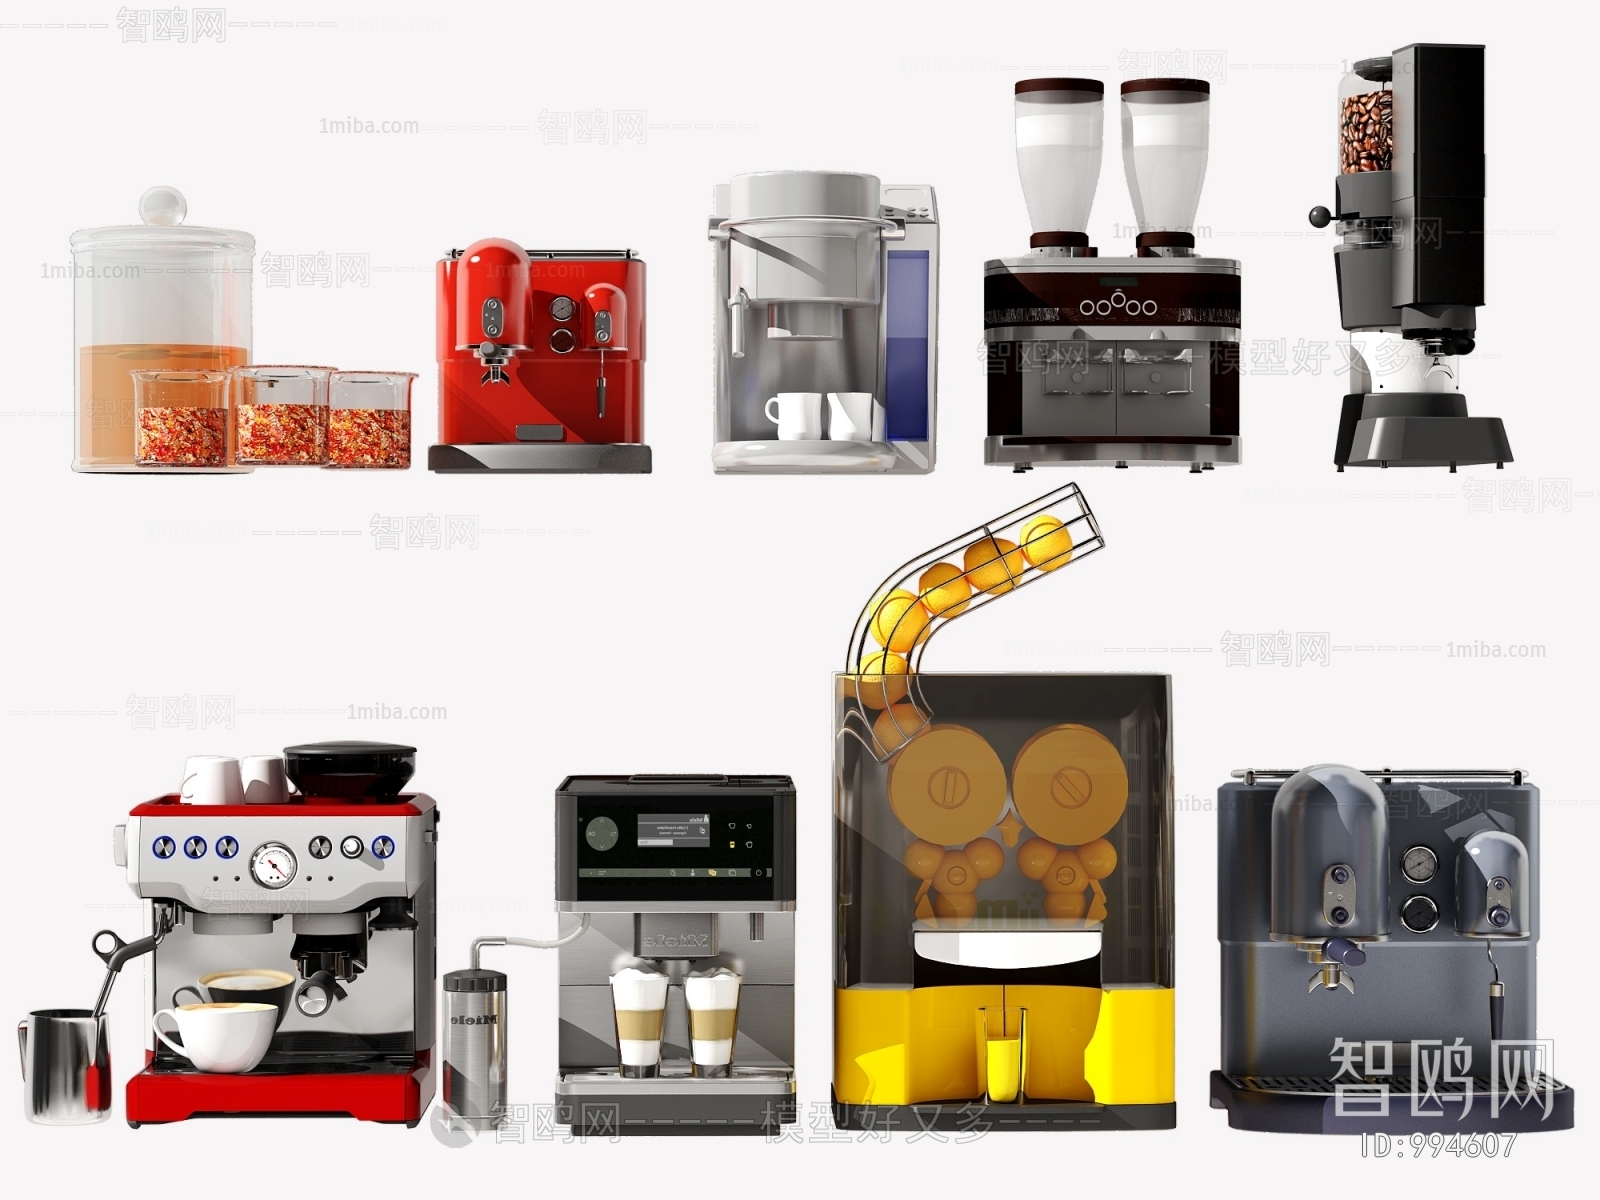 现代咖啡机 榨汁机 饮料机 厨房电器组合